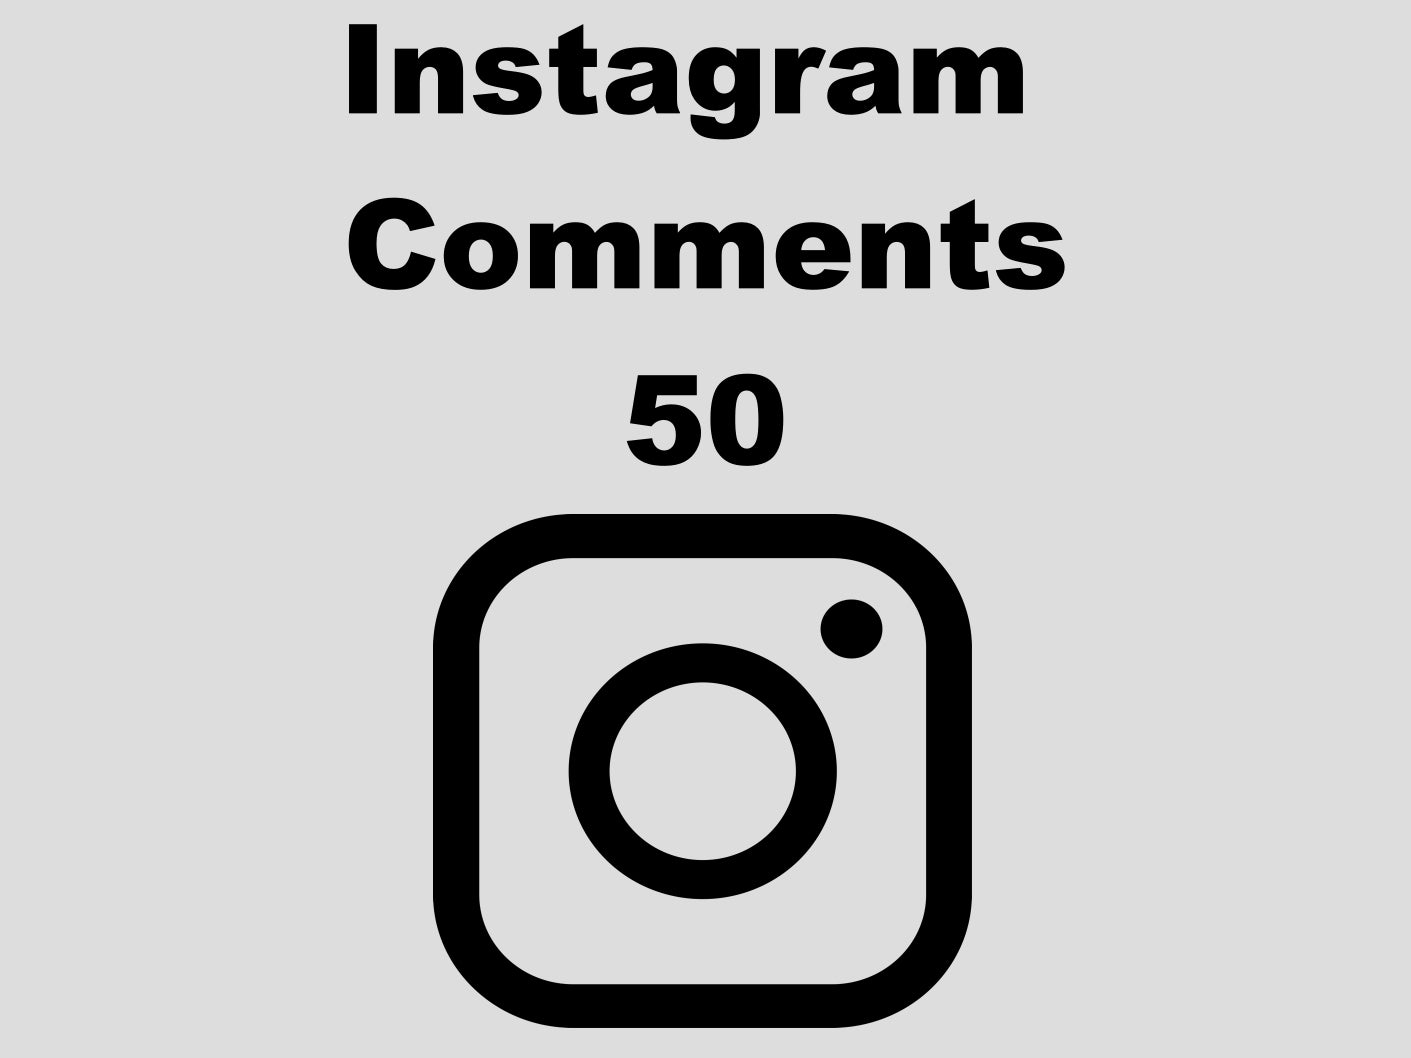 echte Instagram Comments günstig kaufen 50 Kommentare